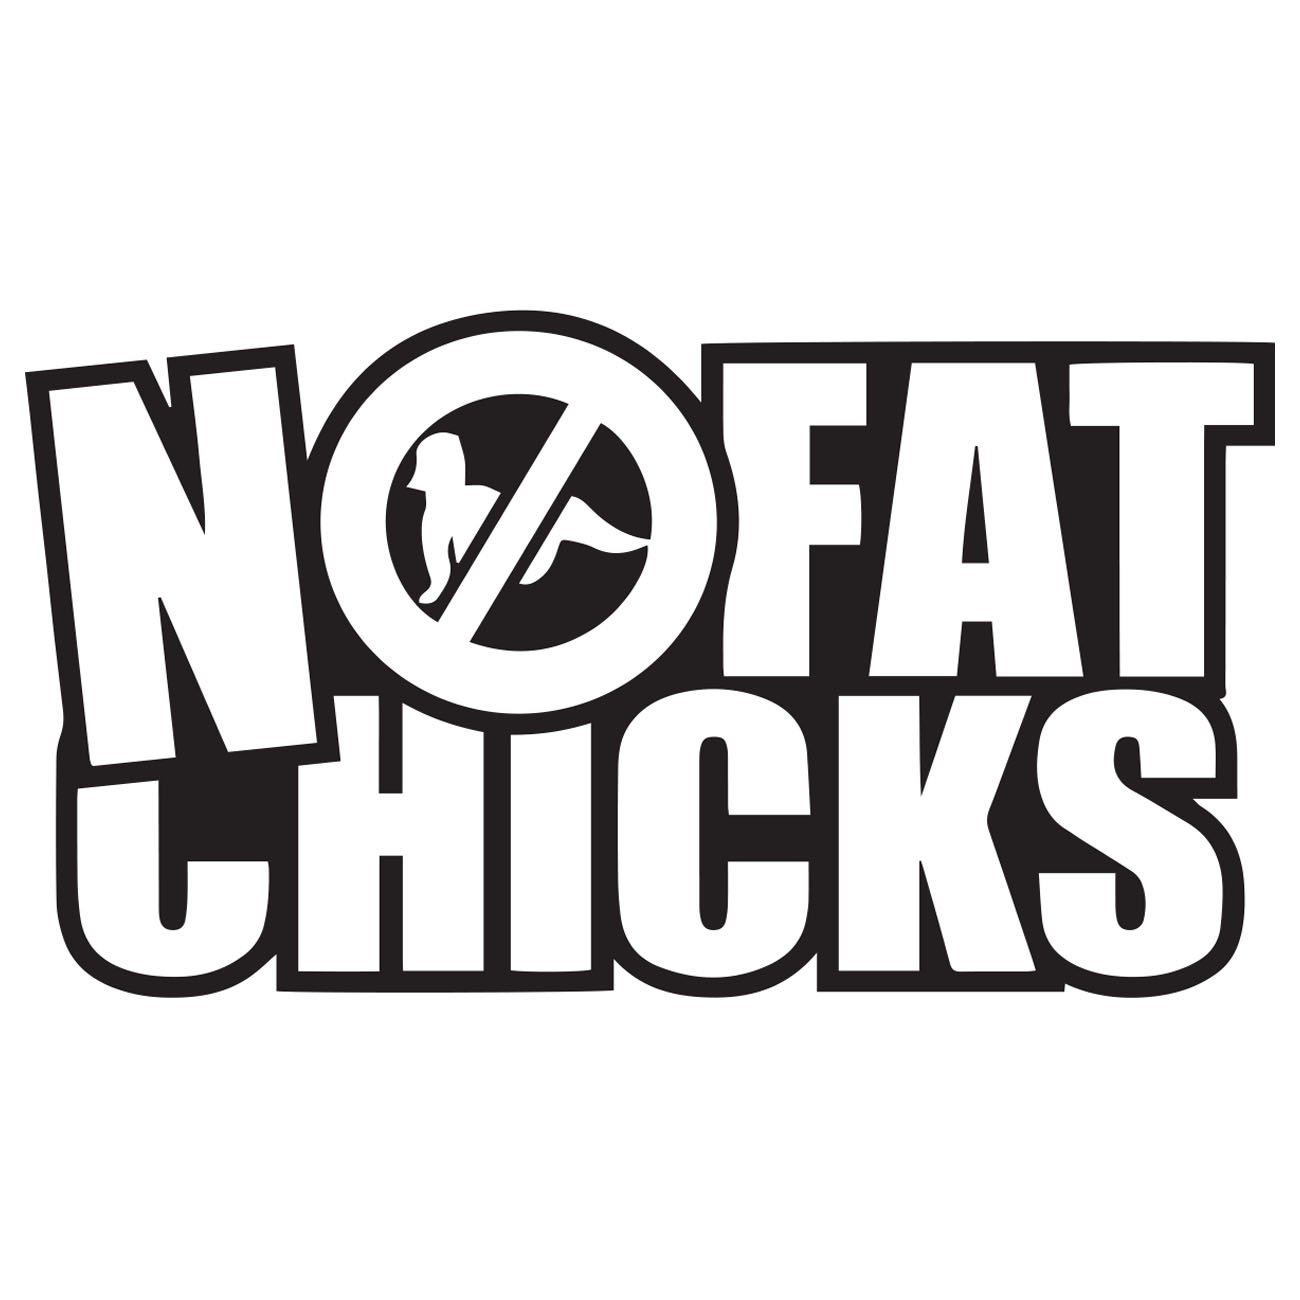 No fat chicks 3